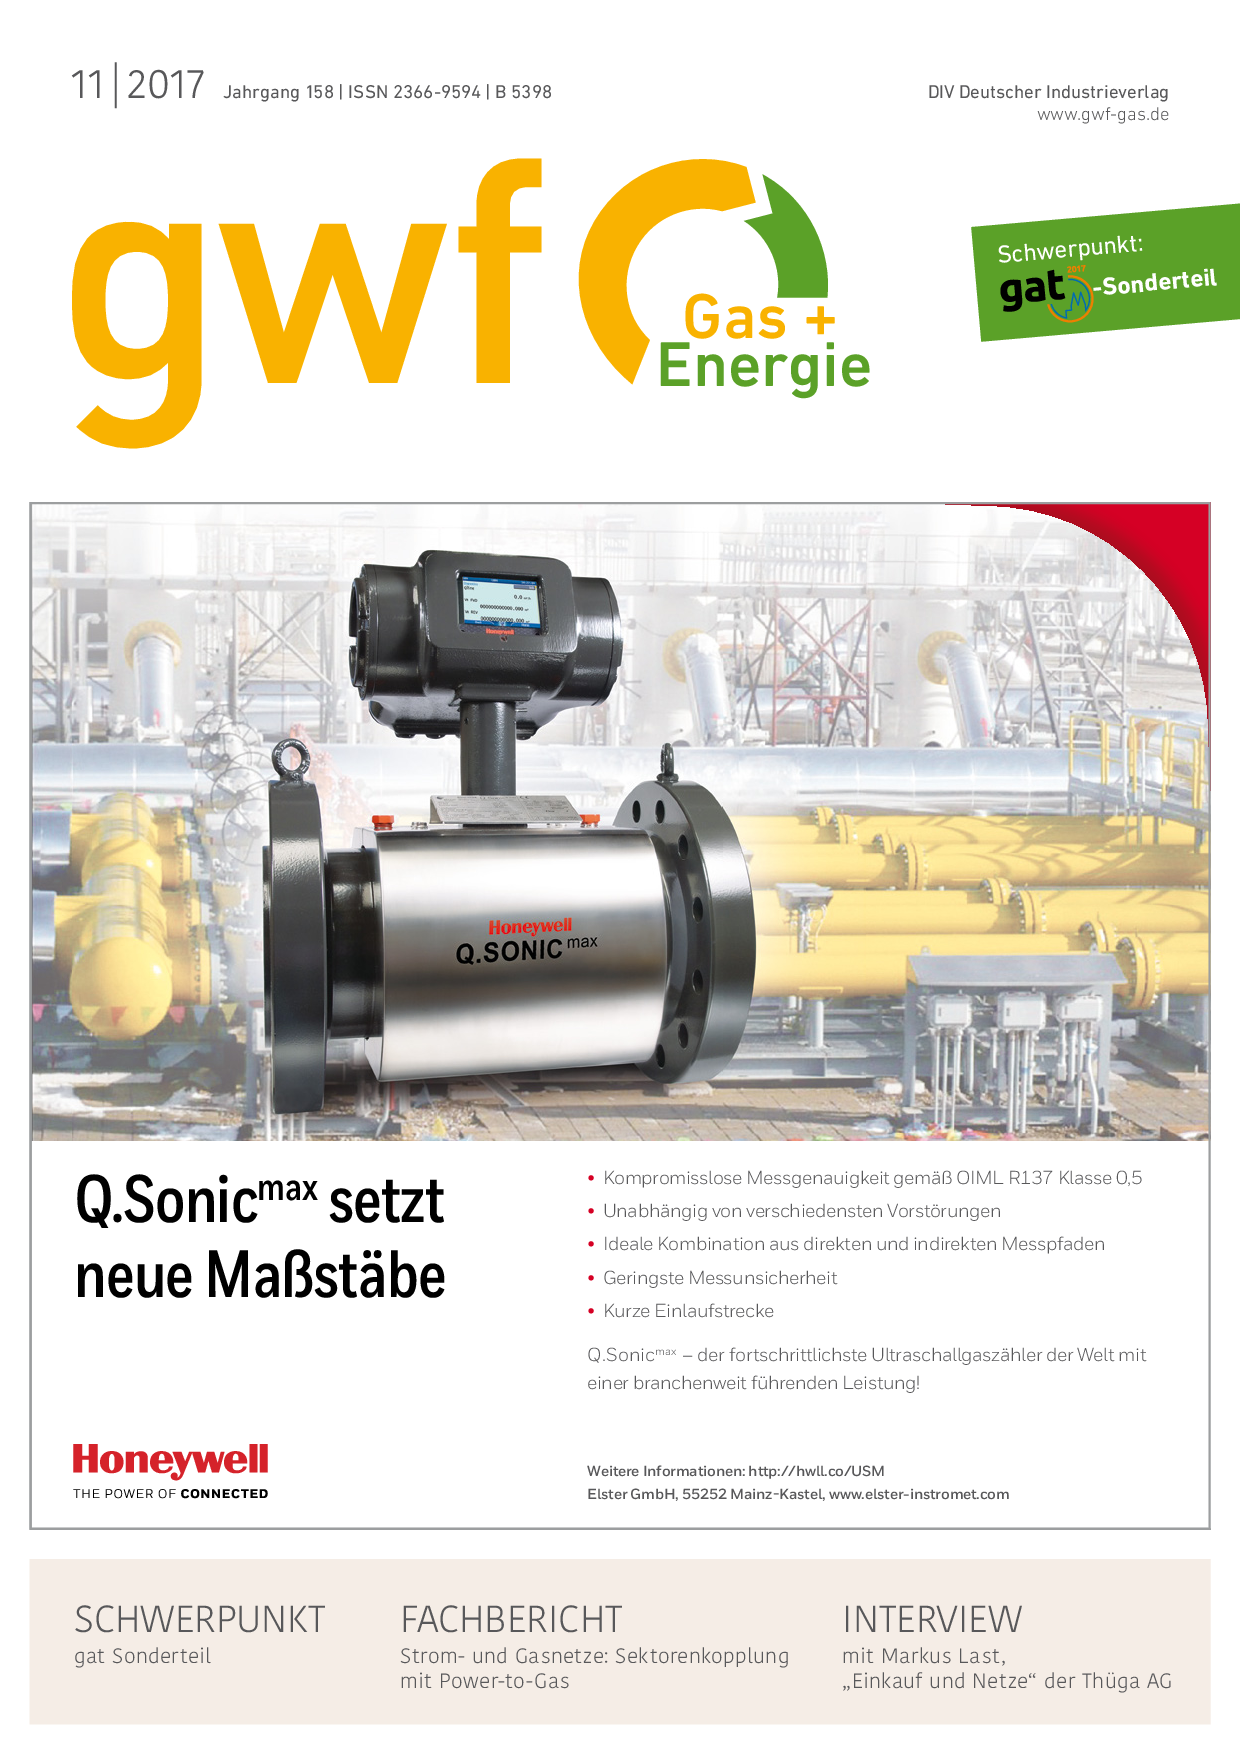 gwf Gas+Energie - 11 2017